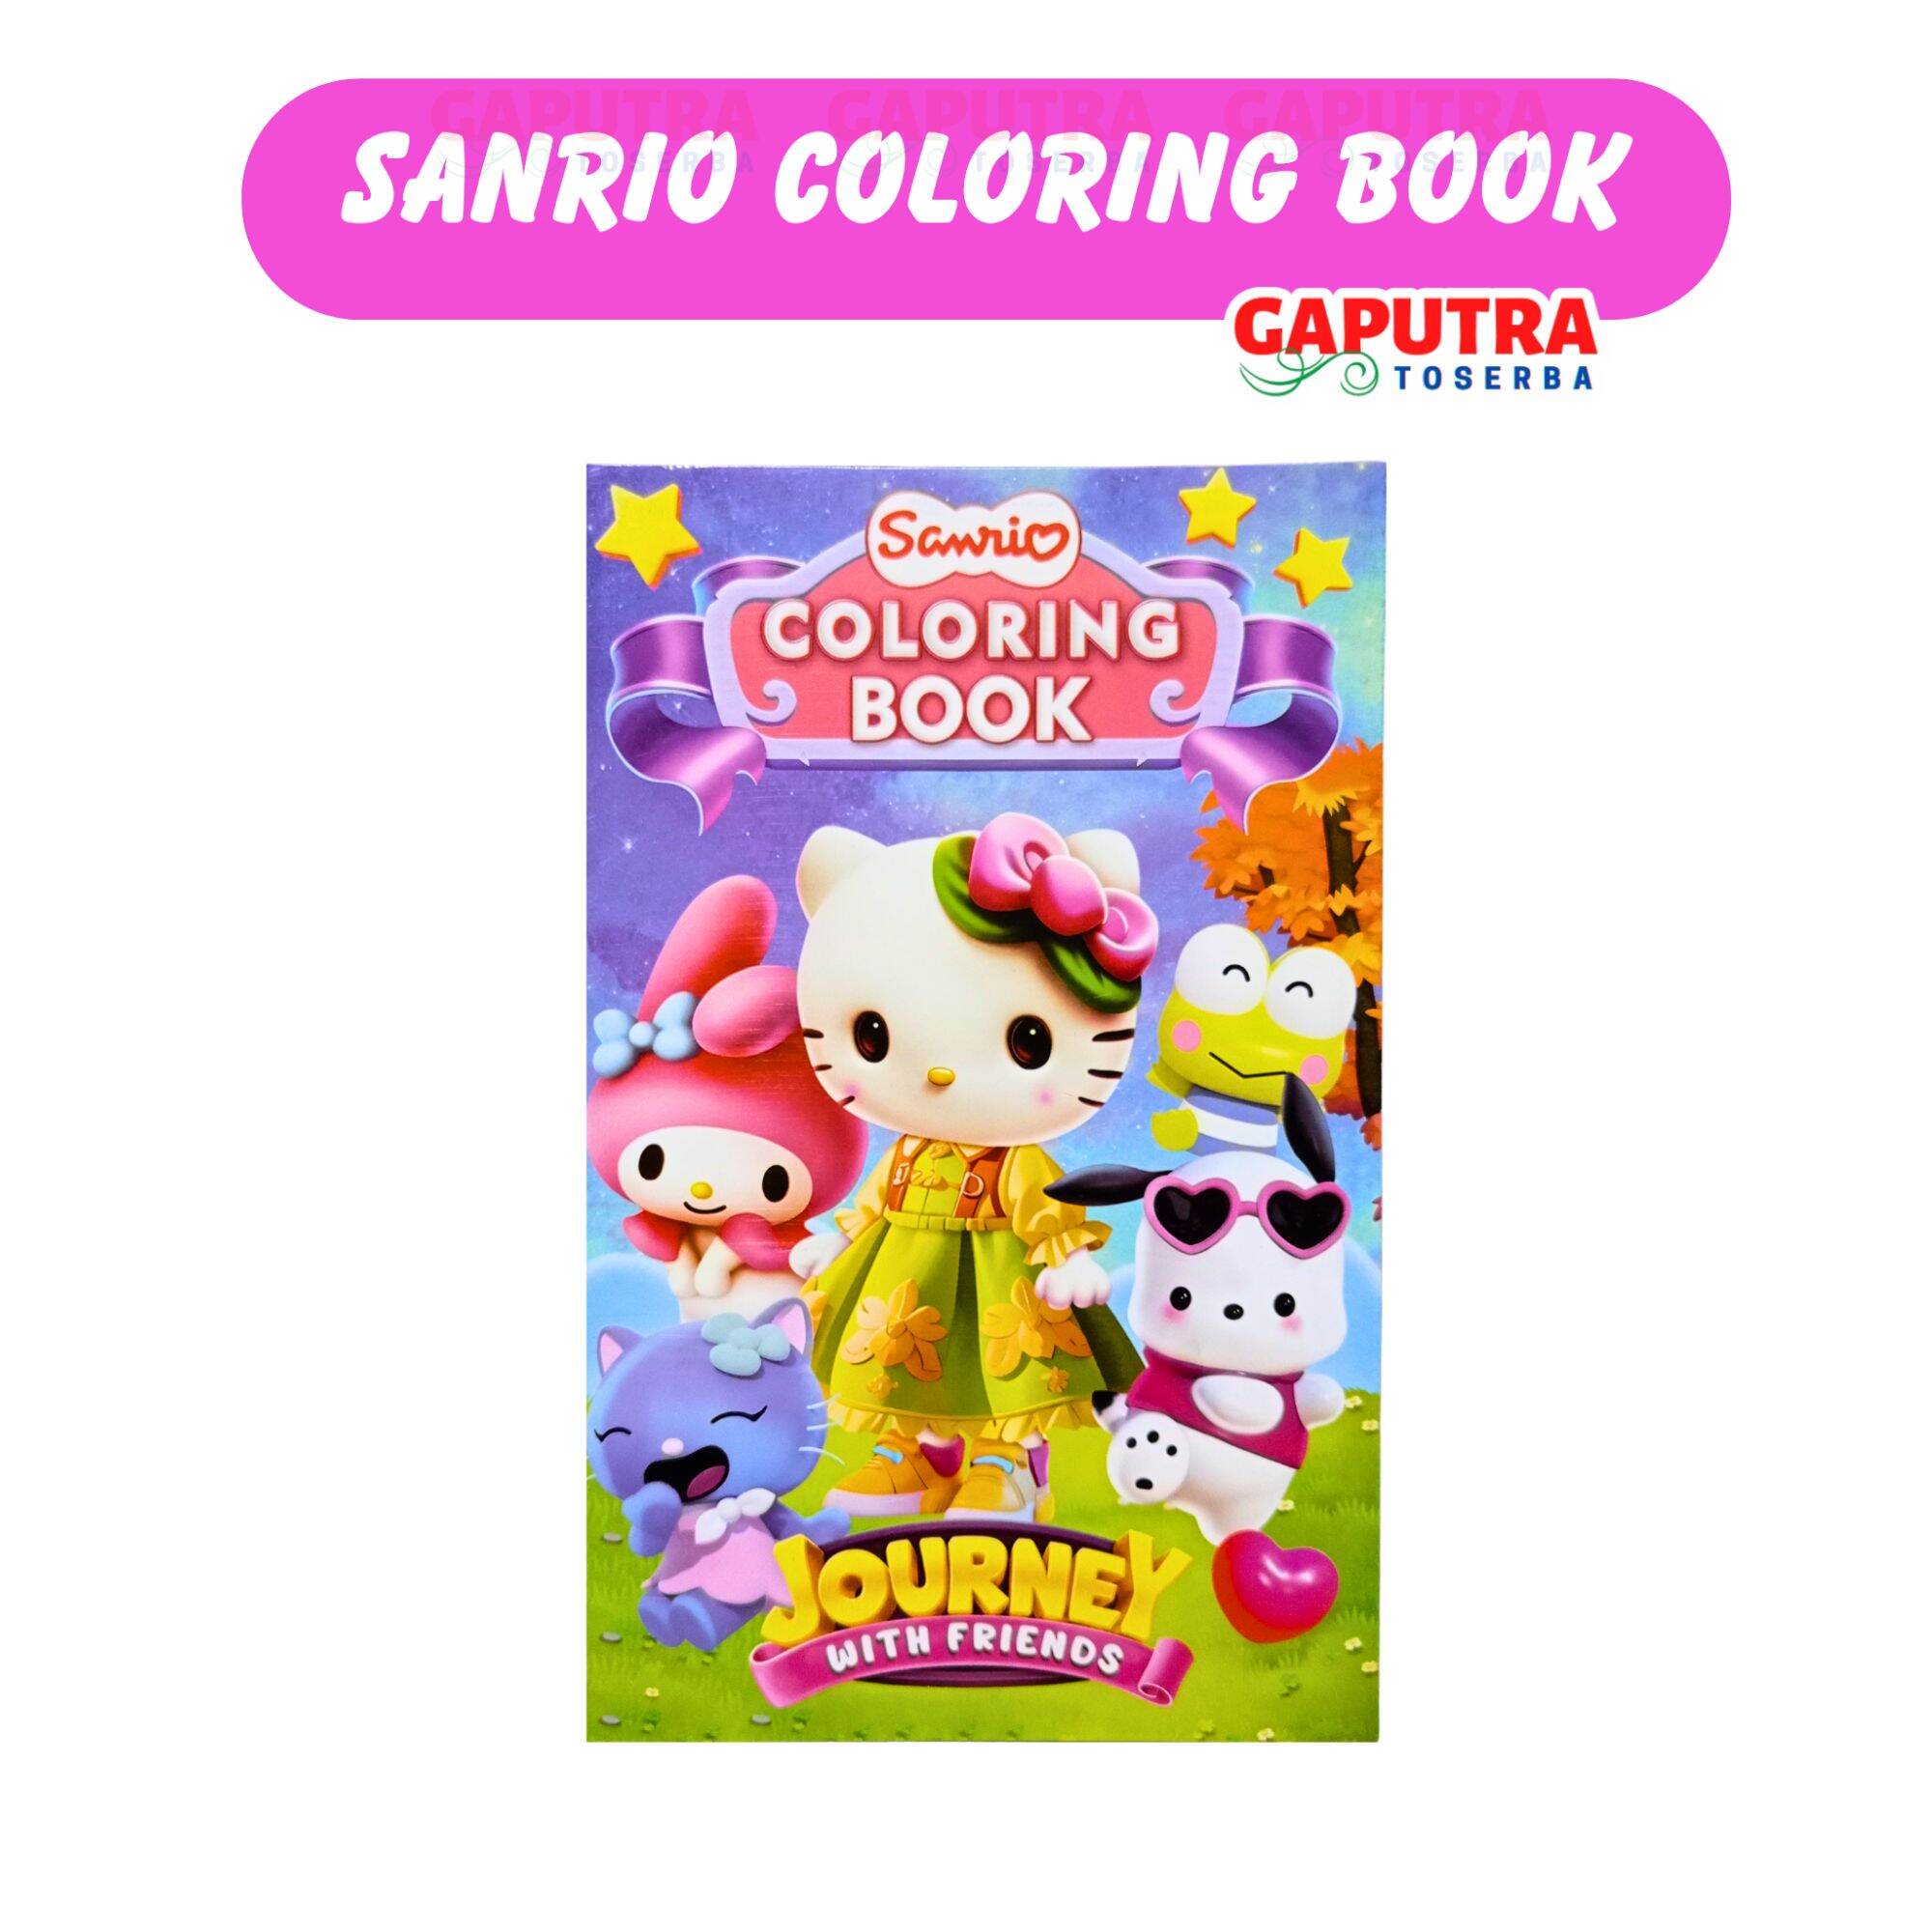 Sanrio Coloring Book - Buku Anak Mewarnai Gambar Seri SANRIO